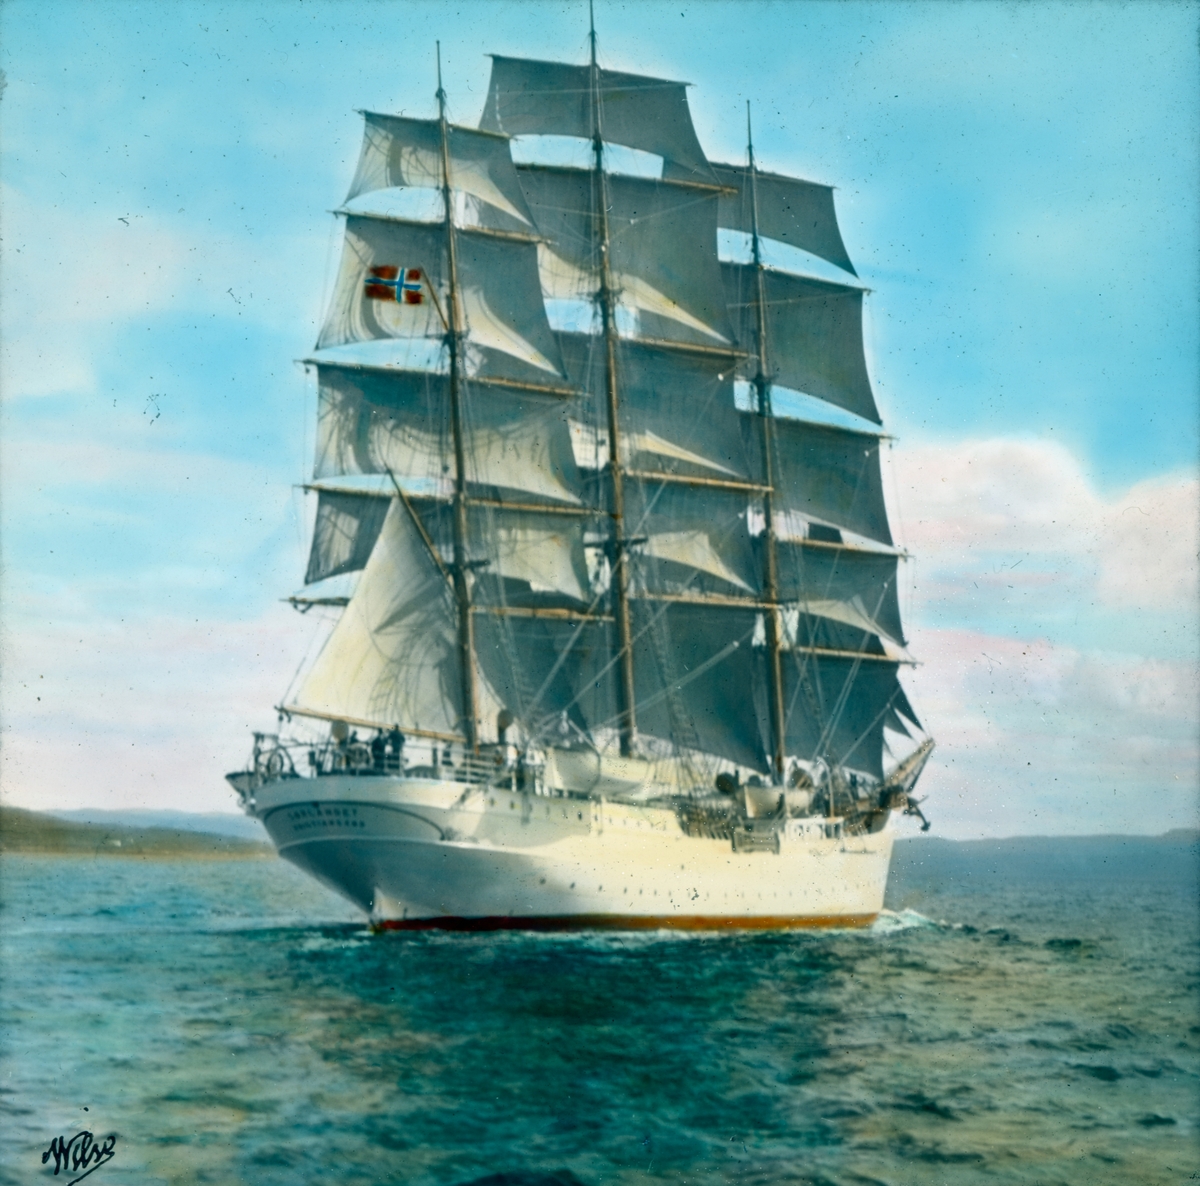 Håndkolorert dias. Seilskipet "Sørlandet" med fulle seil. Skipet er en tremastet fullrigger, som ble sjøsatt som skoleskip i 1927. 